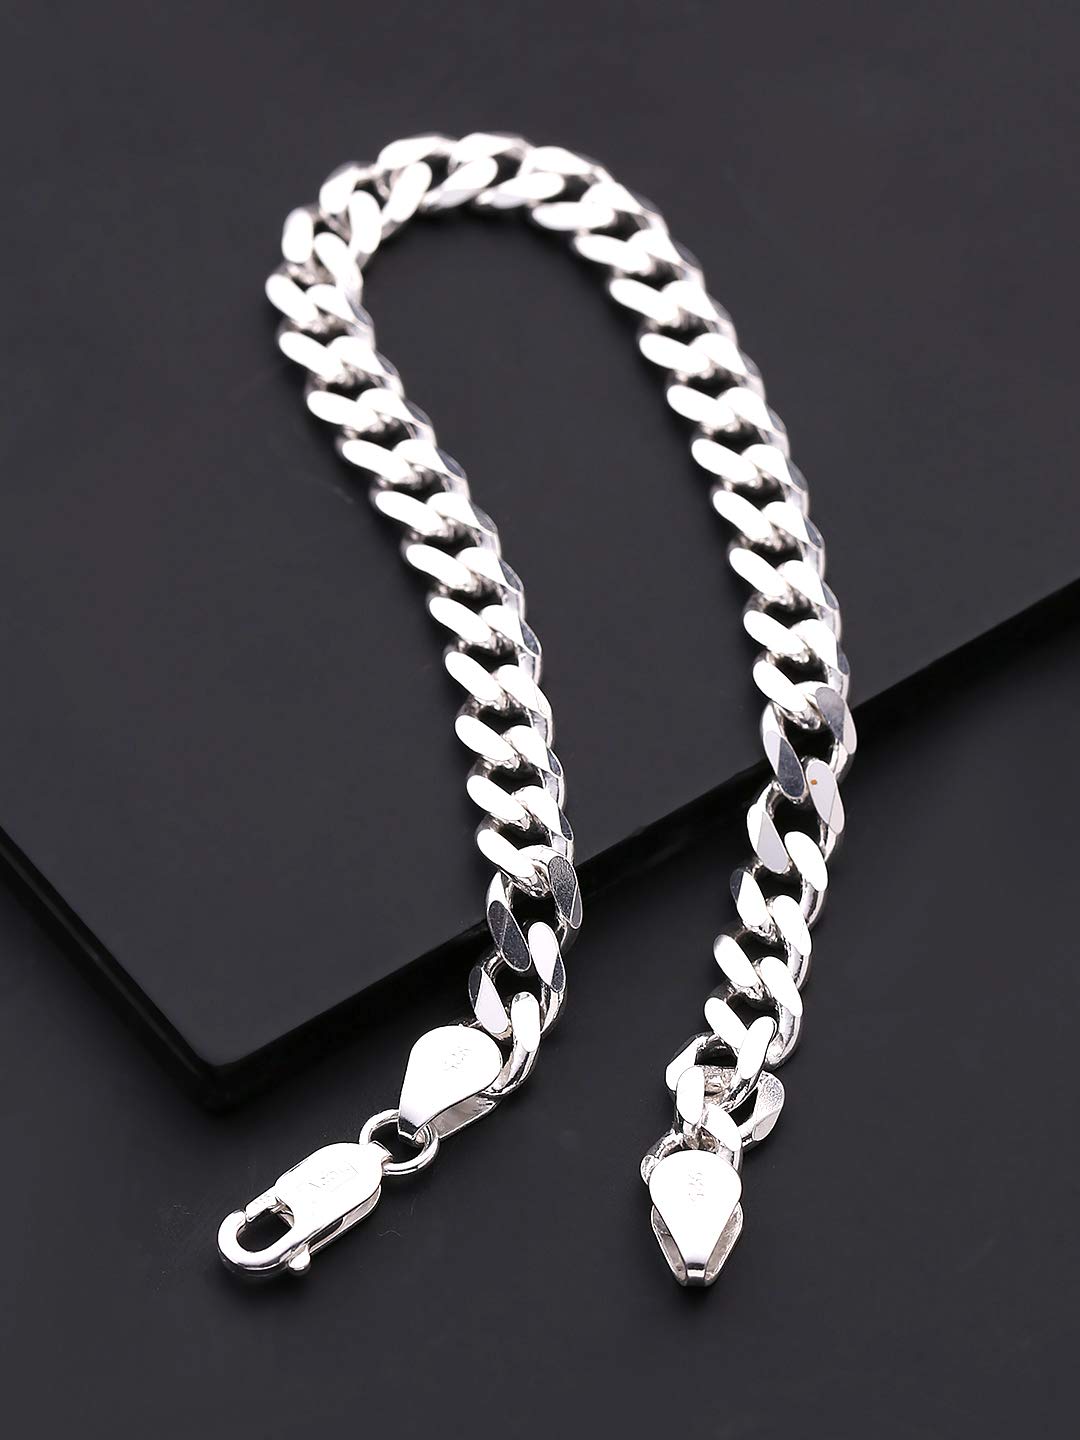 Bracelet for Men Boys Silver Stainless Steel Curb Design Fashion - BeBold -  1445114